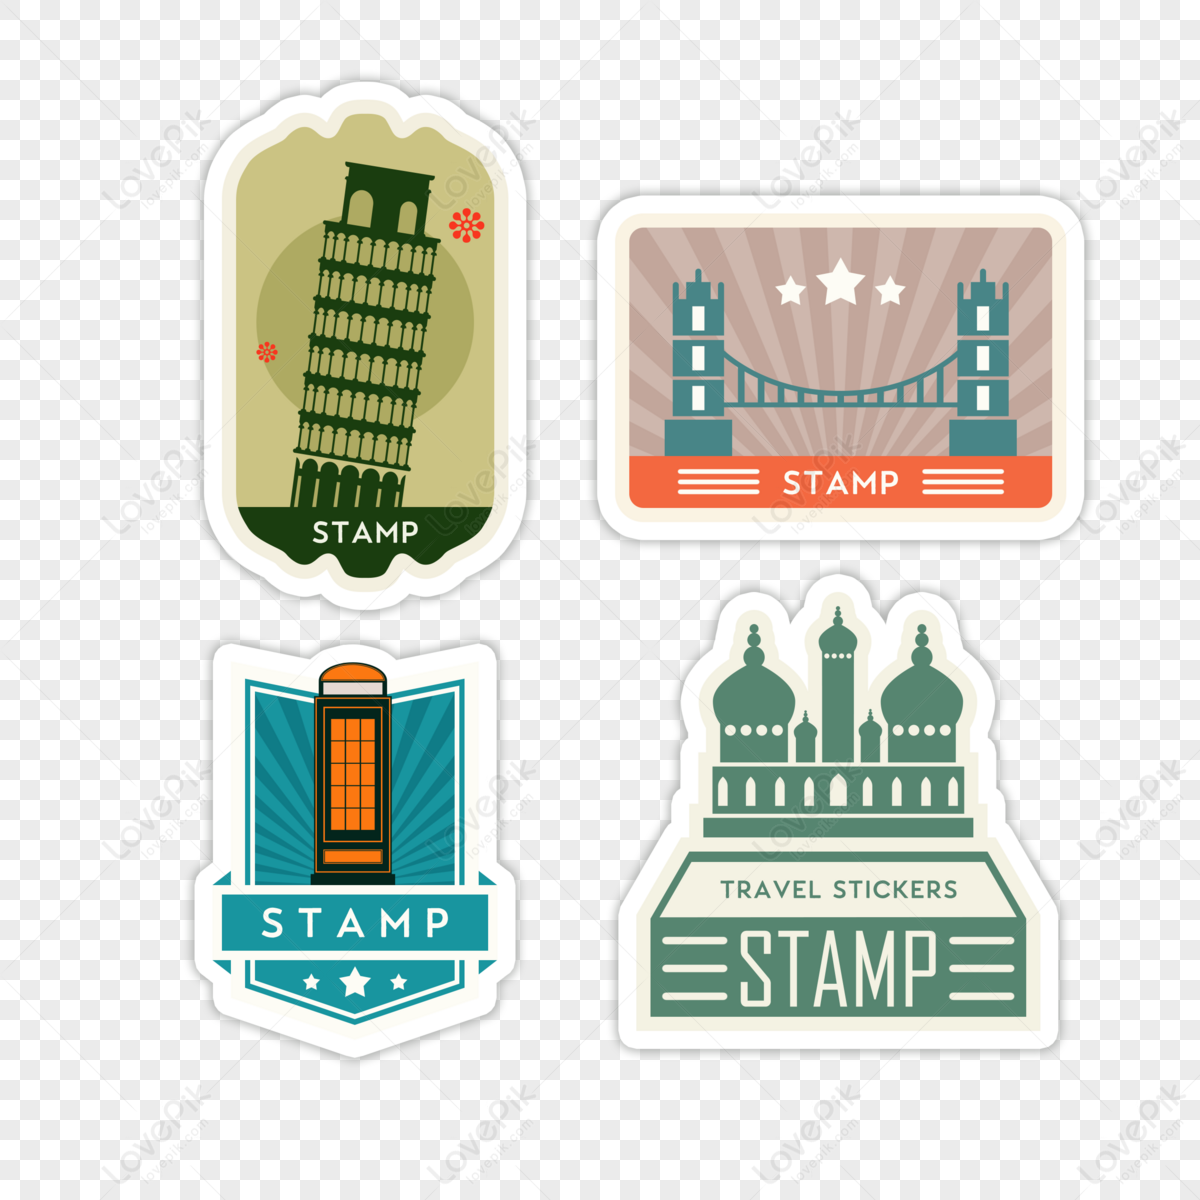 Creative travel vintage stamp sticker,travel stickers,car sticker,travel around the world free png